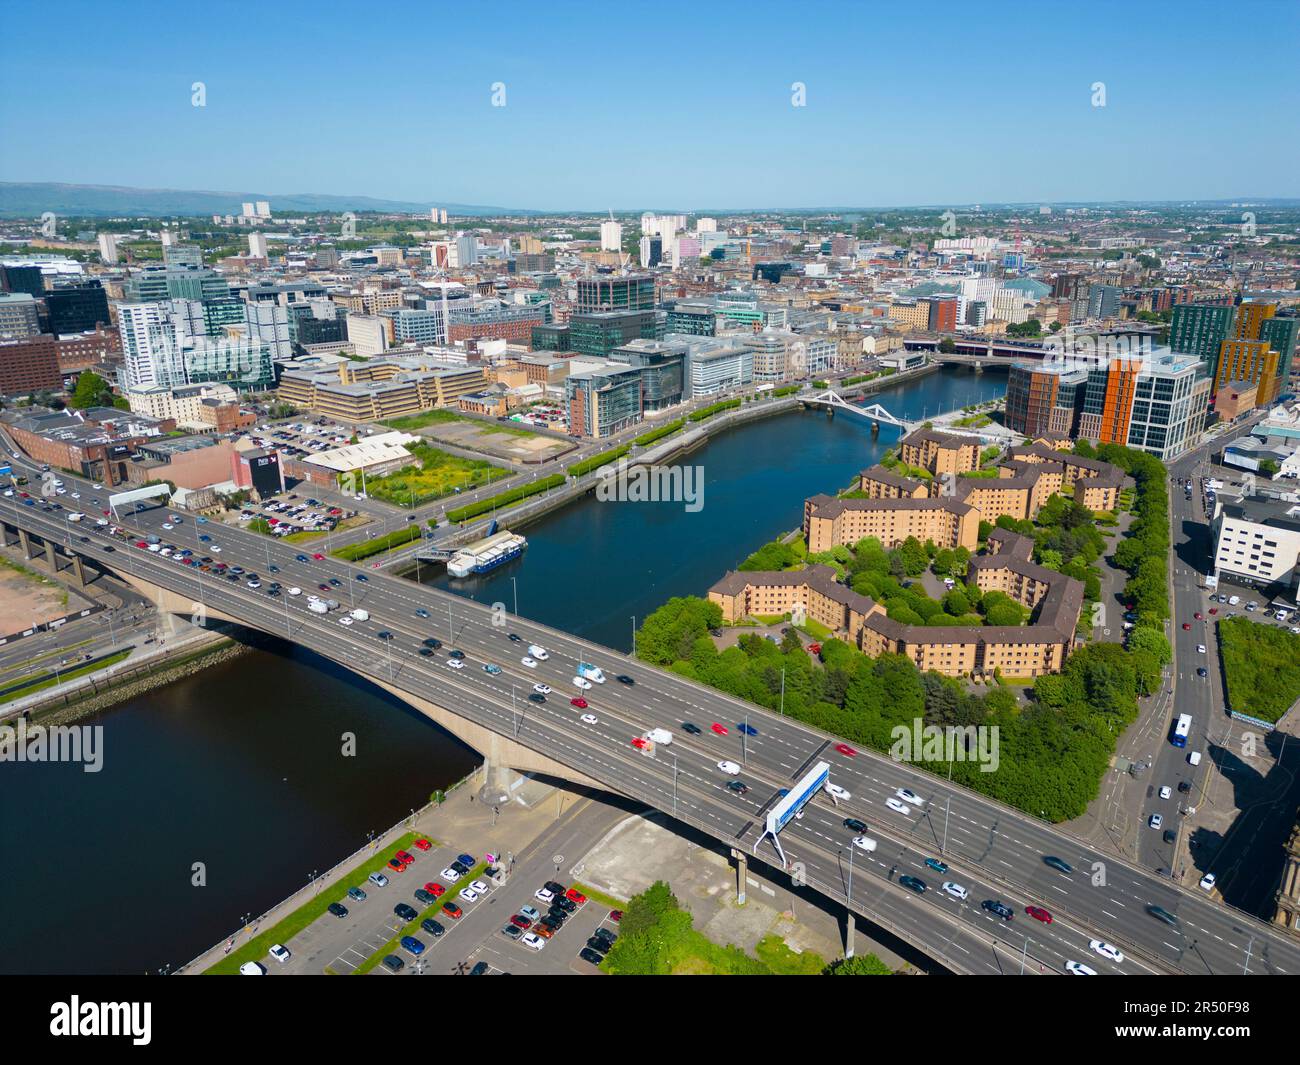 Vue aérienne depuis l'horizon du centre-ville de Glasgow, le long de la rivière Clyde, à Kingston Bridge, en Écosse, au Royaume-Uni Banque D'Images